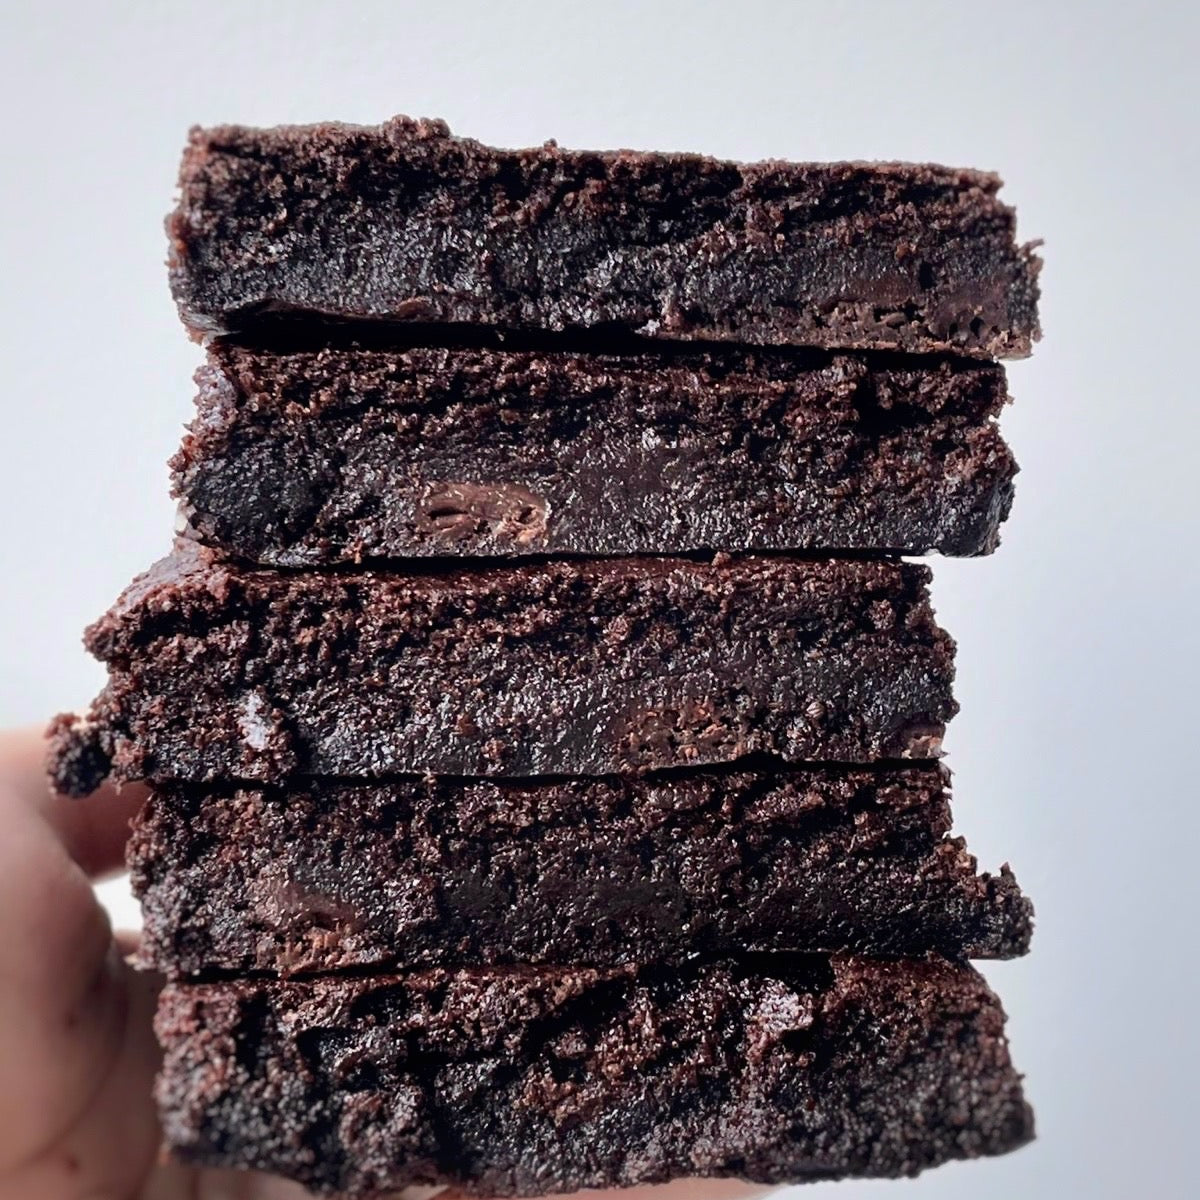 patisserie sans gluten vegan montreal brownies chocolat noir 